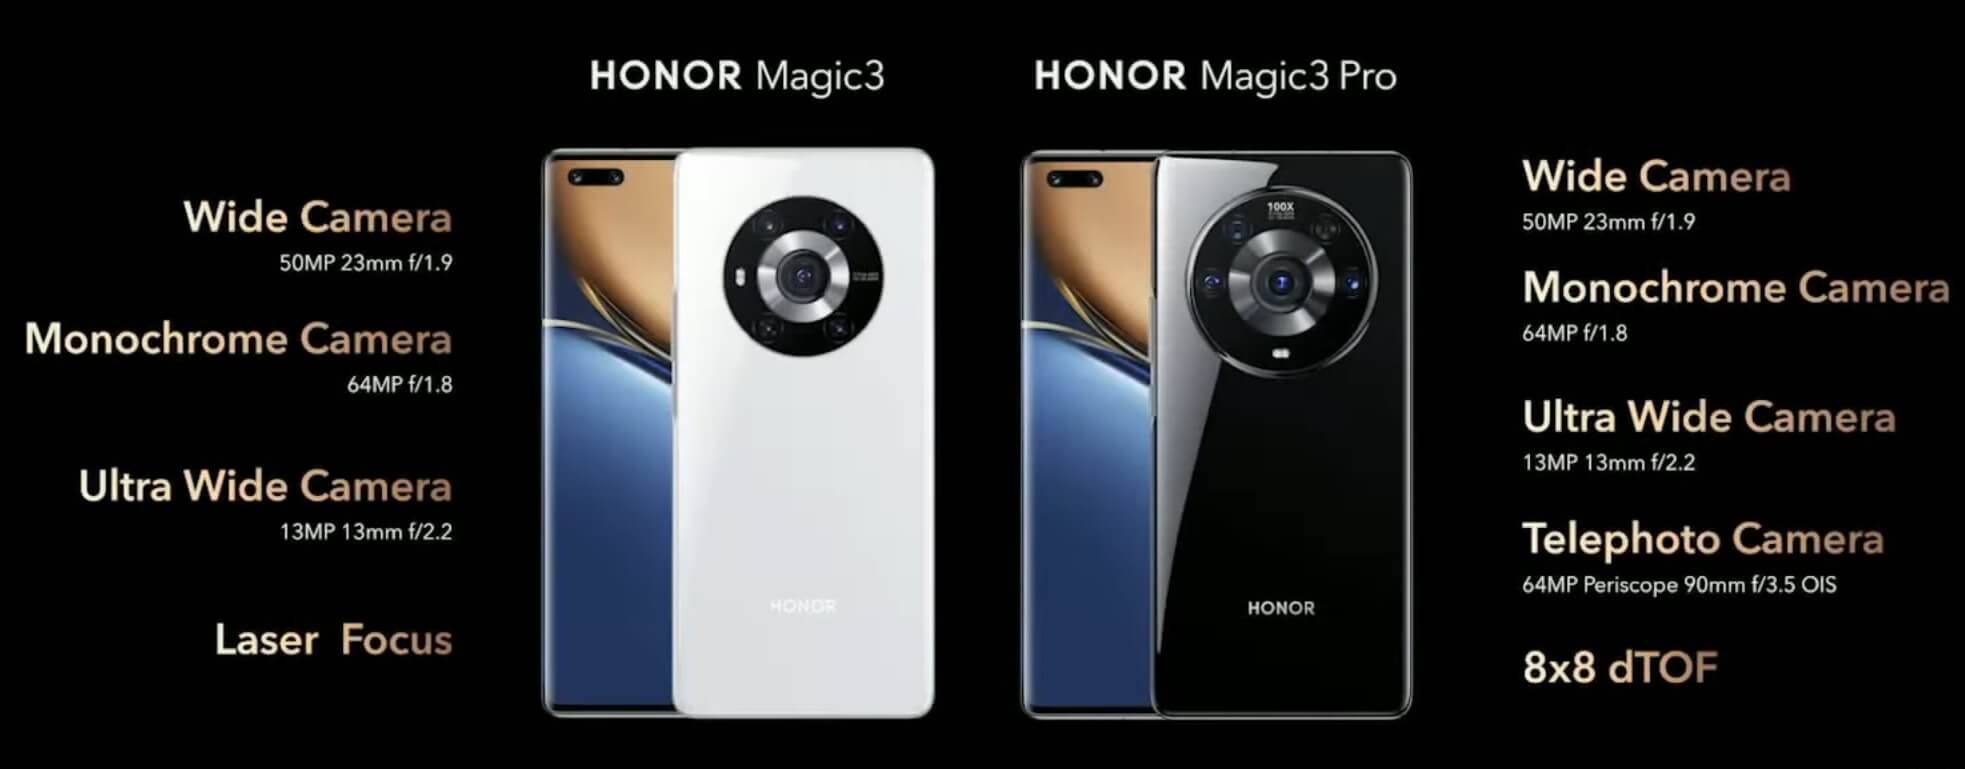 HONOR Magic3 series cameras